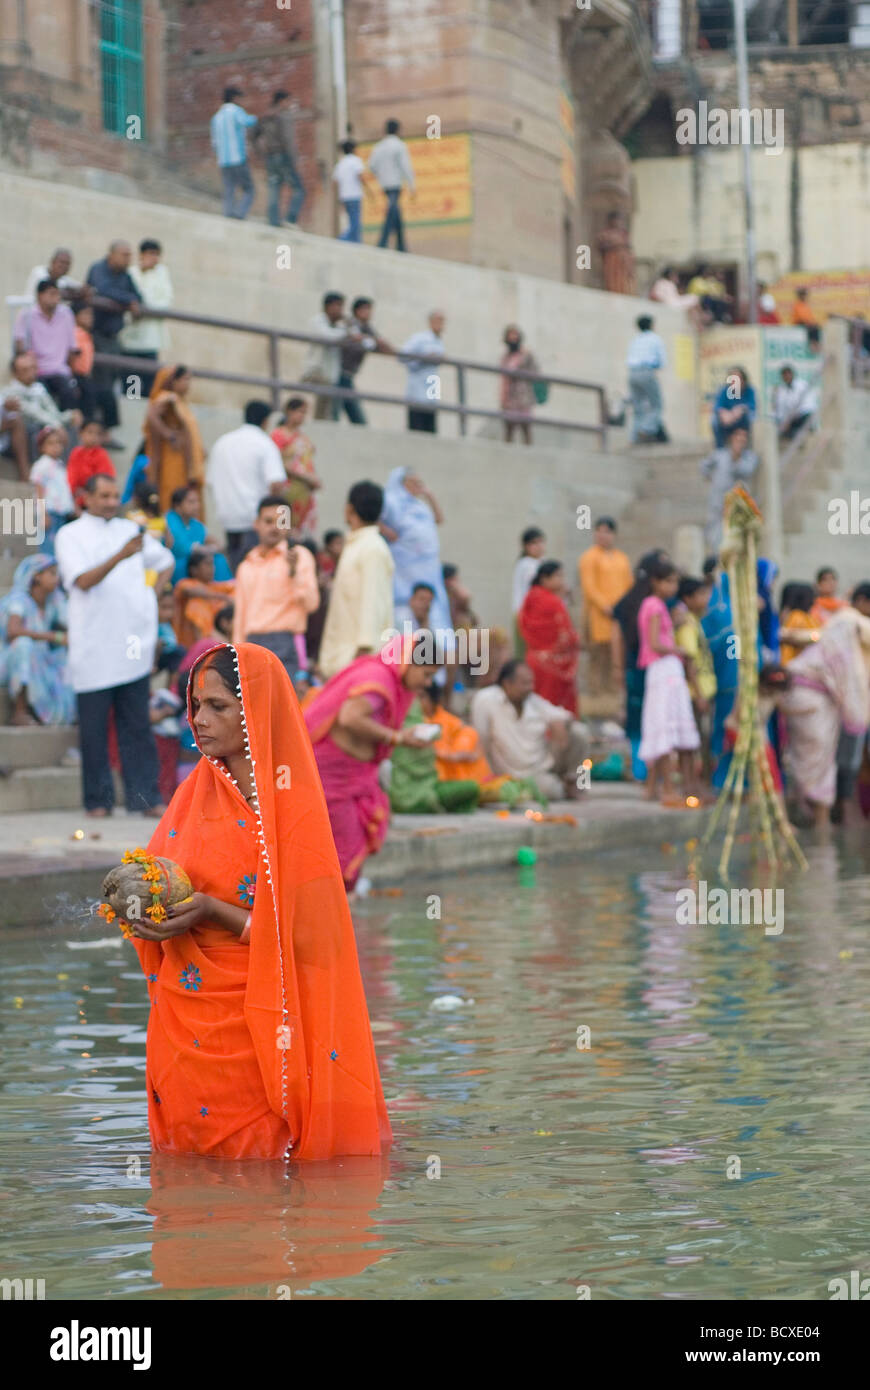 Las personas bañarse en el río Ganges. Varanasi, India. Foto de stock